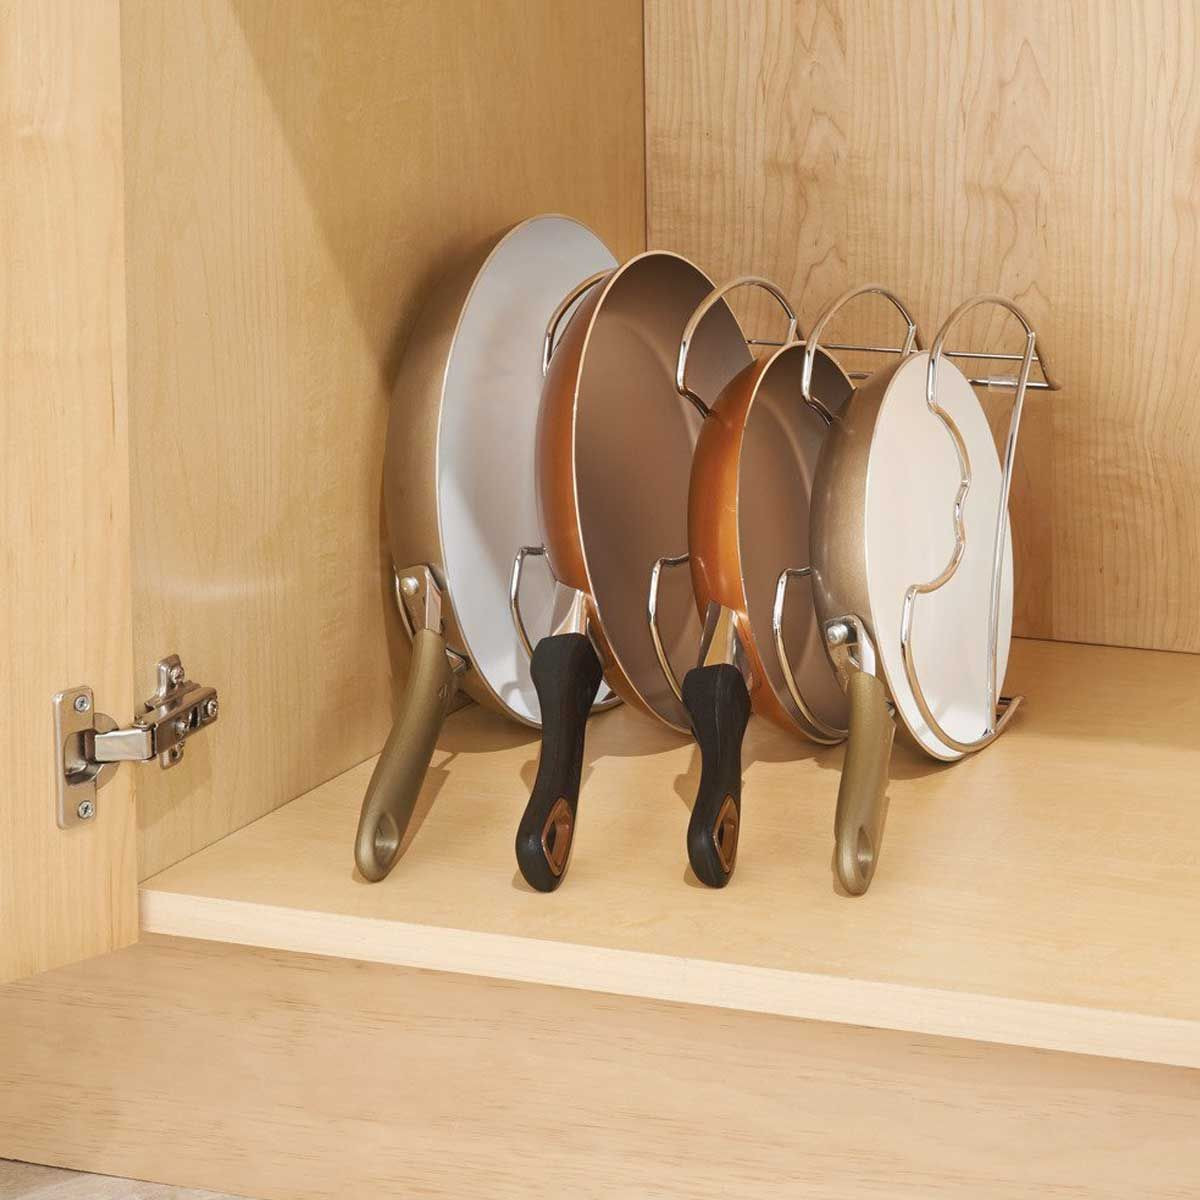 Comment ranger ses casseroles et poêles dans la cuisine ? – Blog BUT